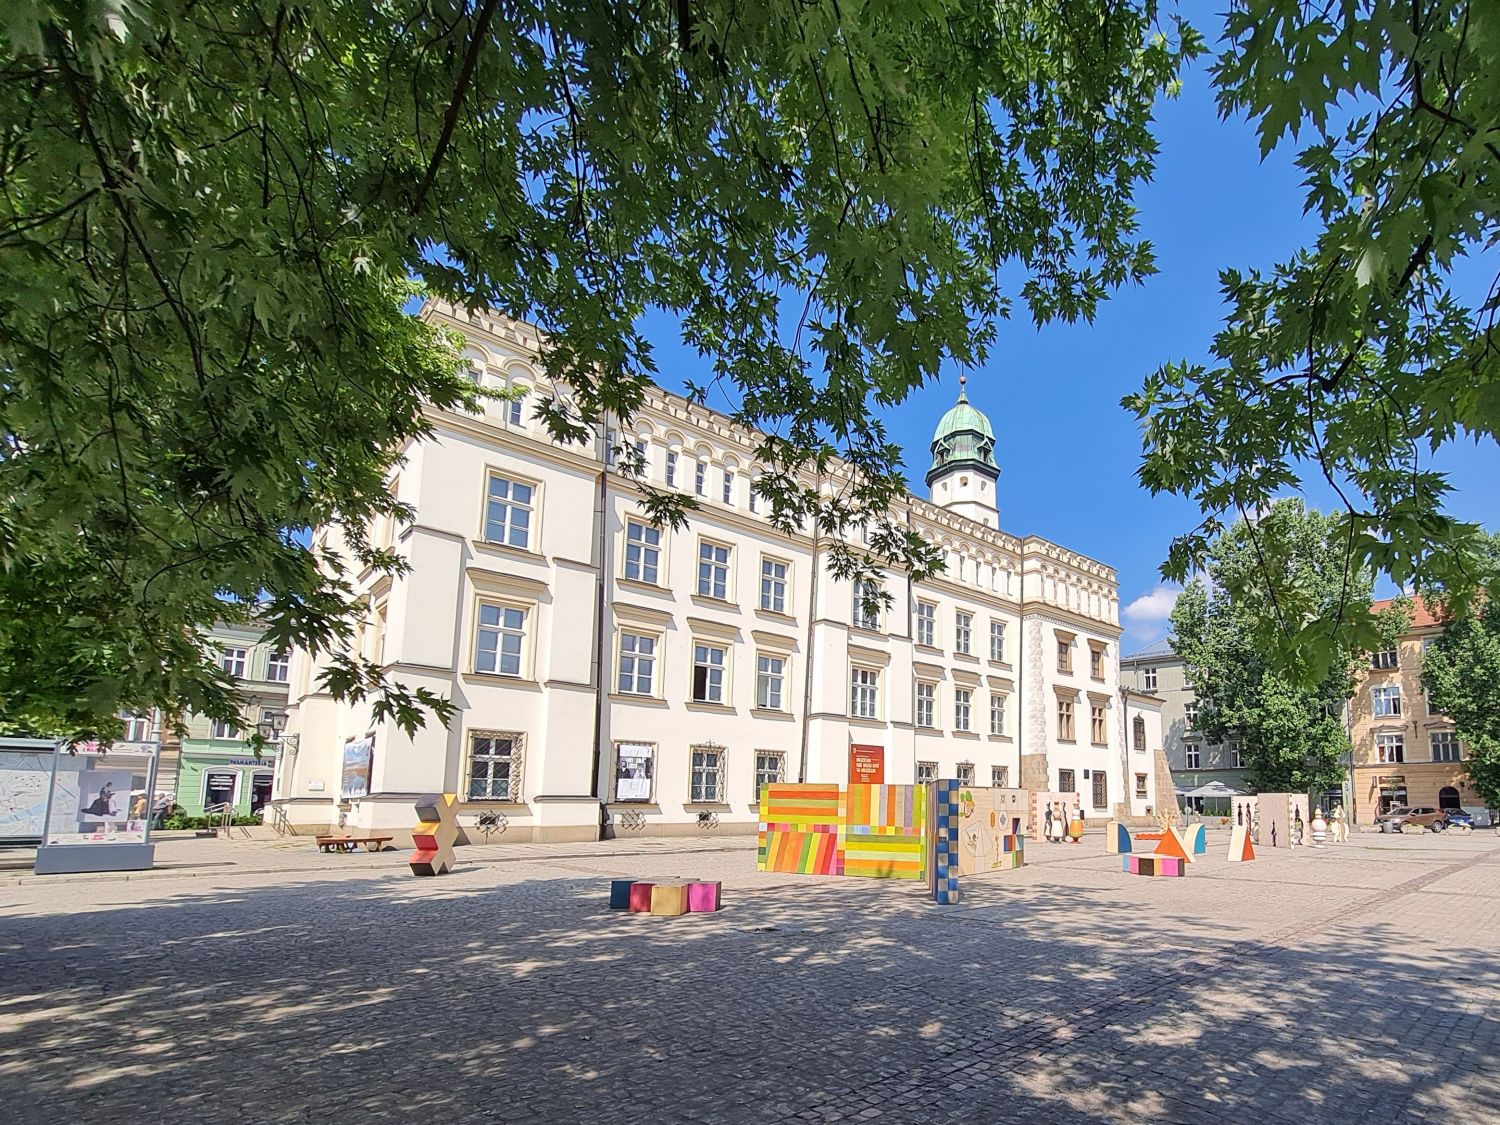 Muzeum Etnograficzne w Krakowie